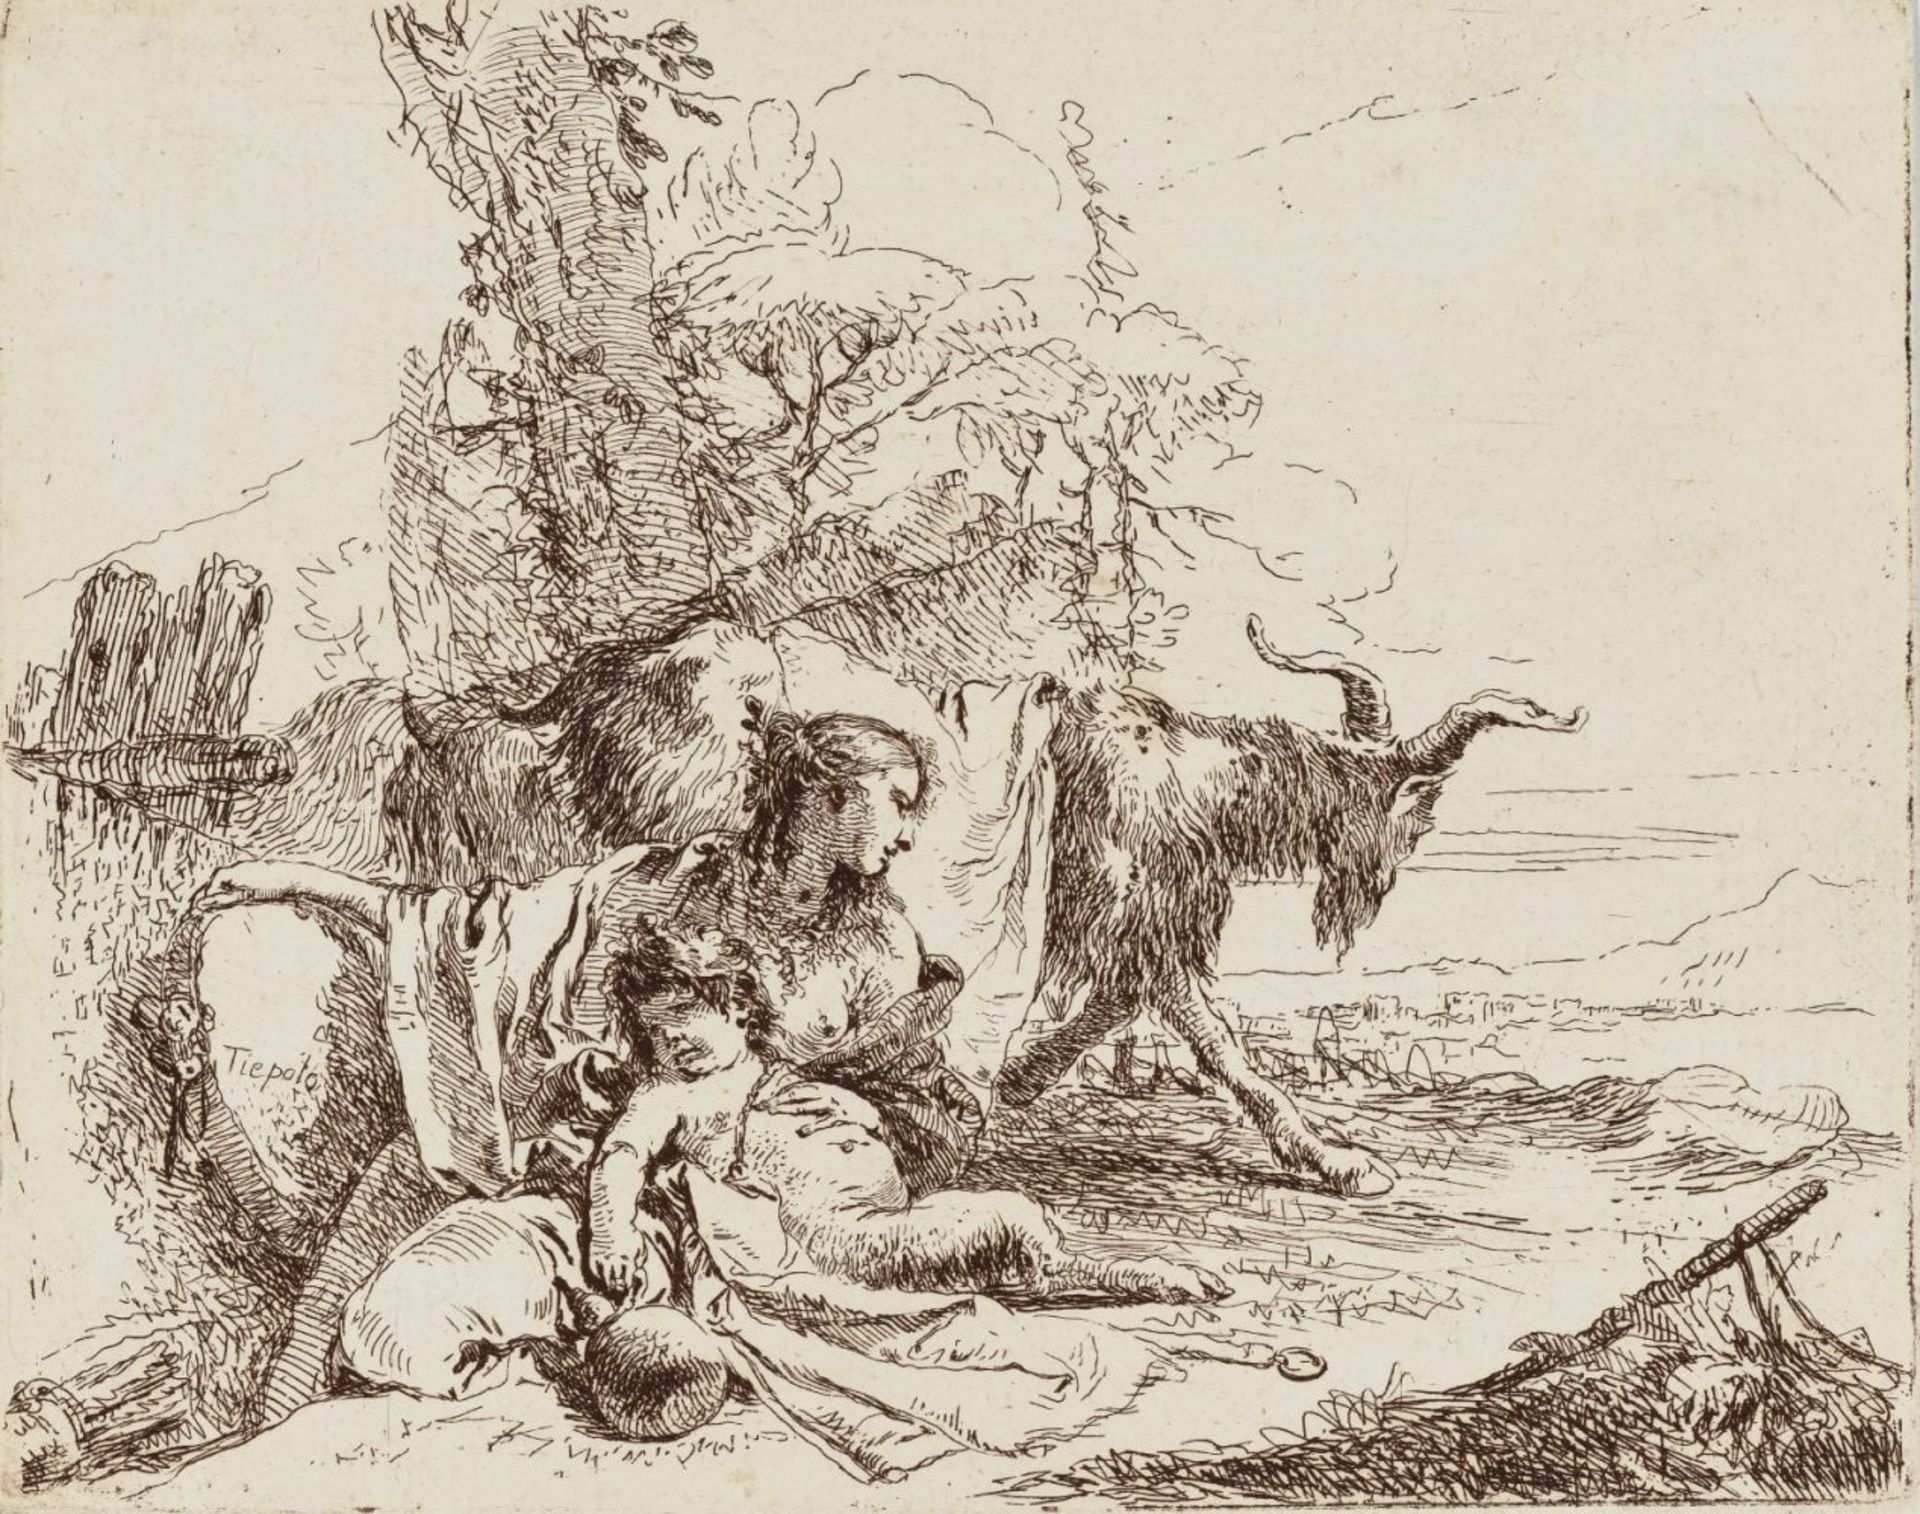 Giovanni Battista Tiepolo